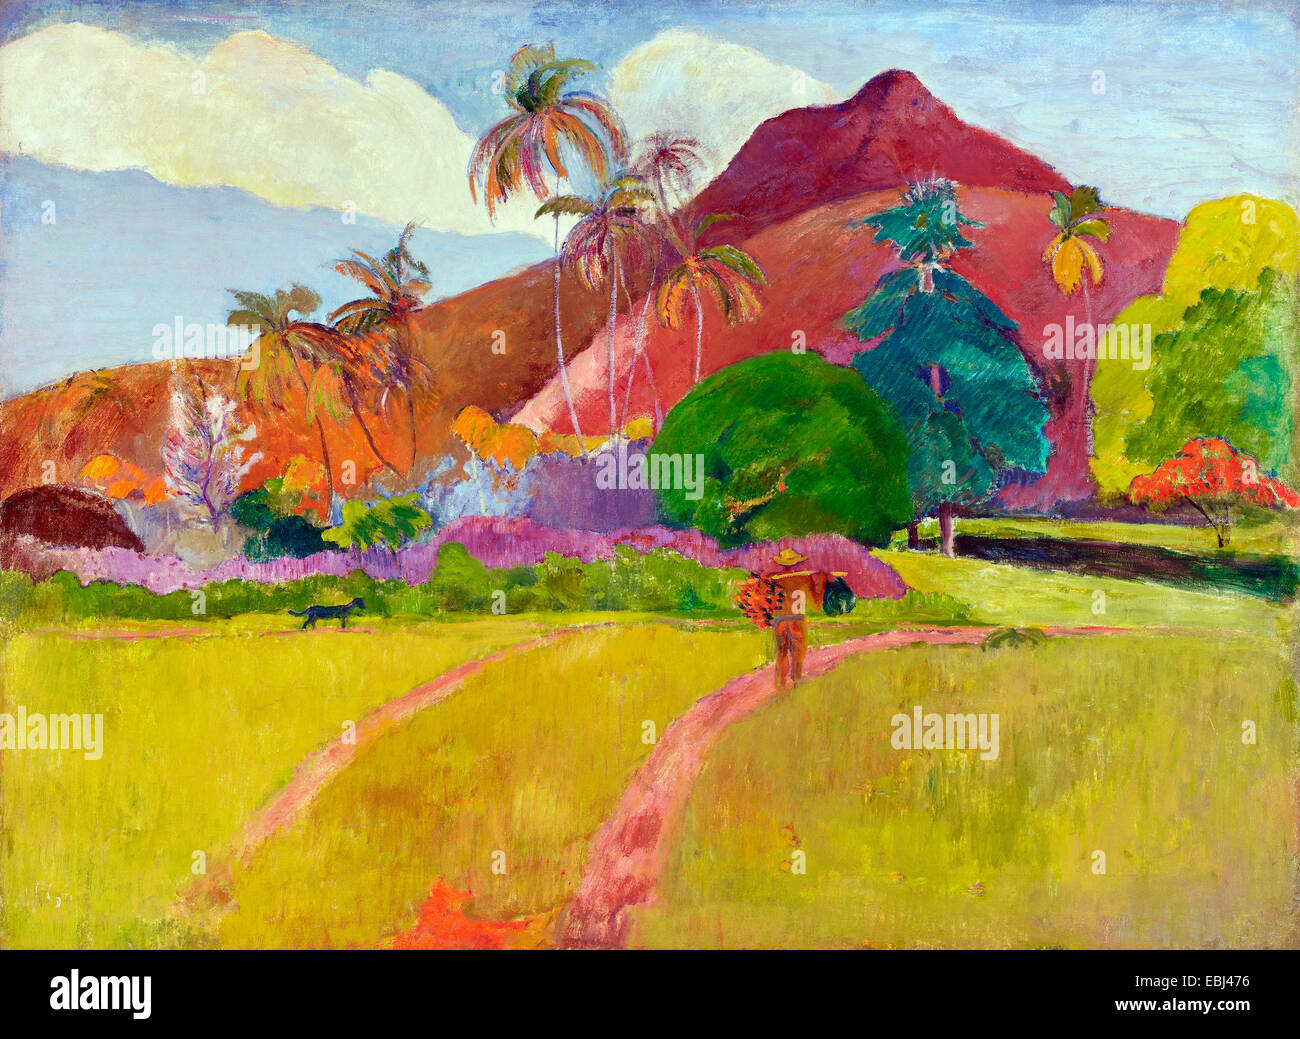 Paul Gauguin, Tahitian Landschaft 1891 Öl auf Leinwand. Minneapolis Institute of Arts, Minnesota, USA. Stockfoto